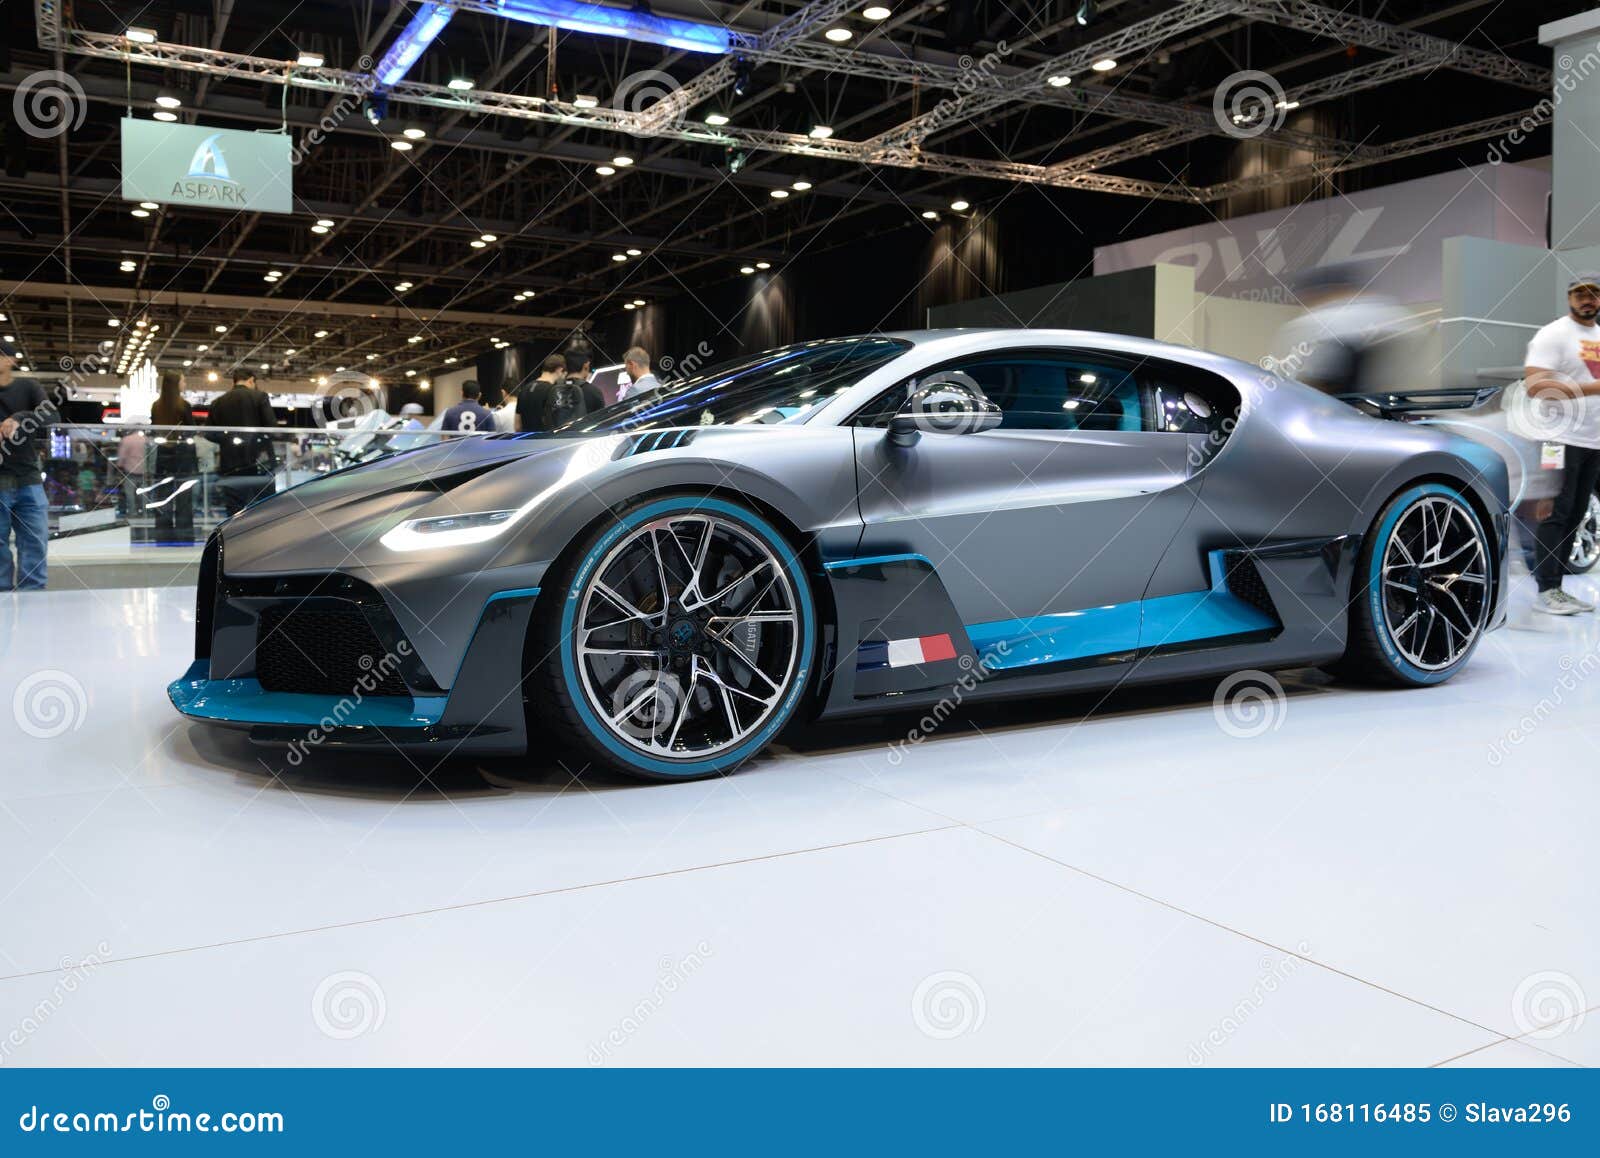 The Bugatti Divo Sportscar Is On Dubai Motor Show 2019 ...